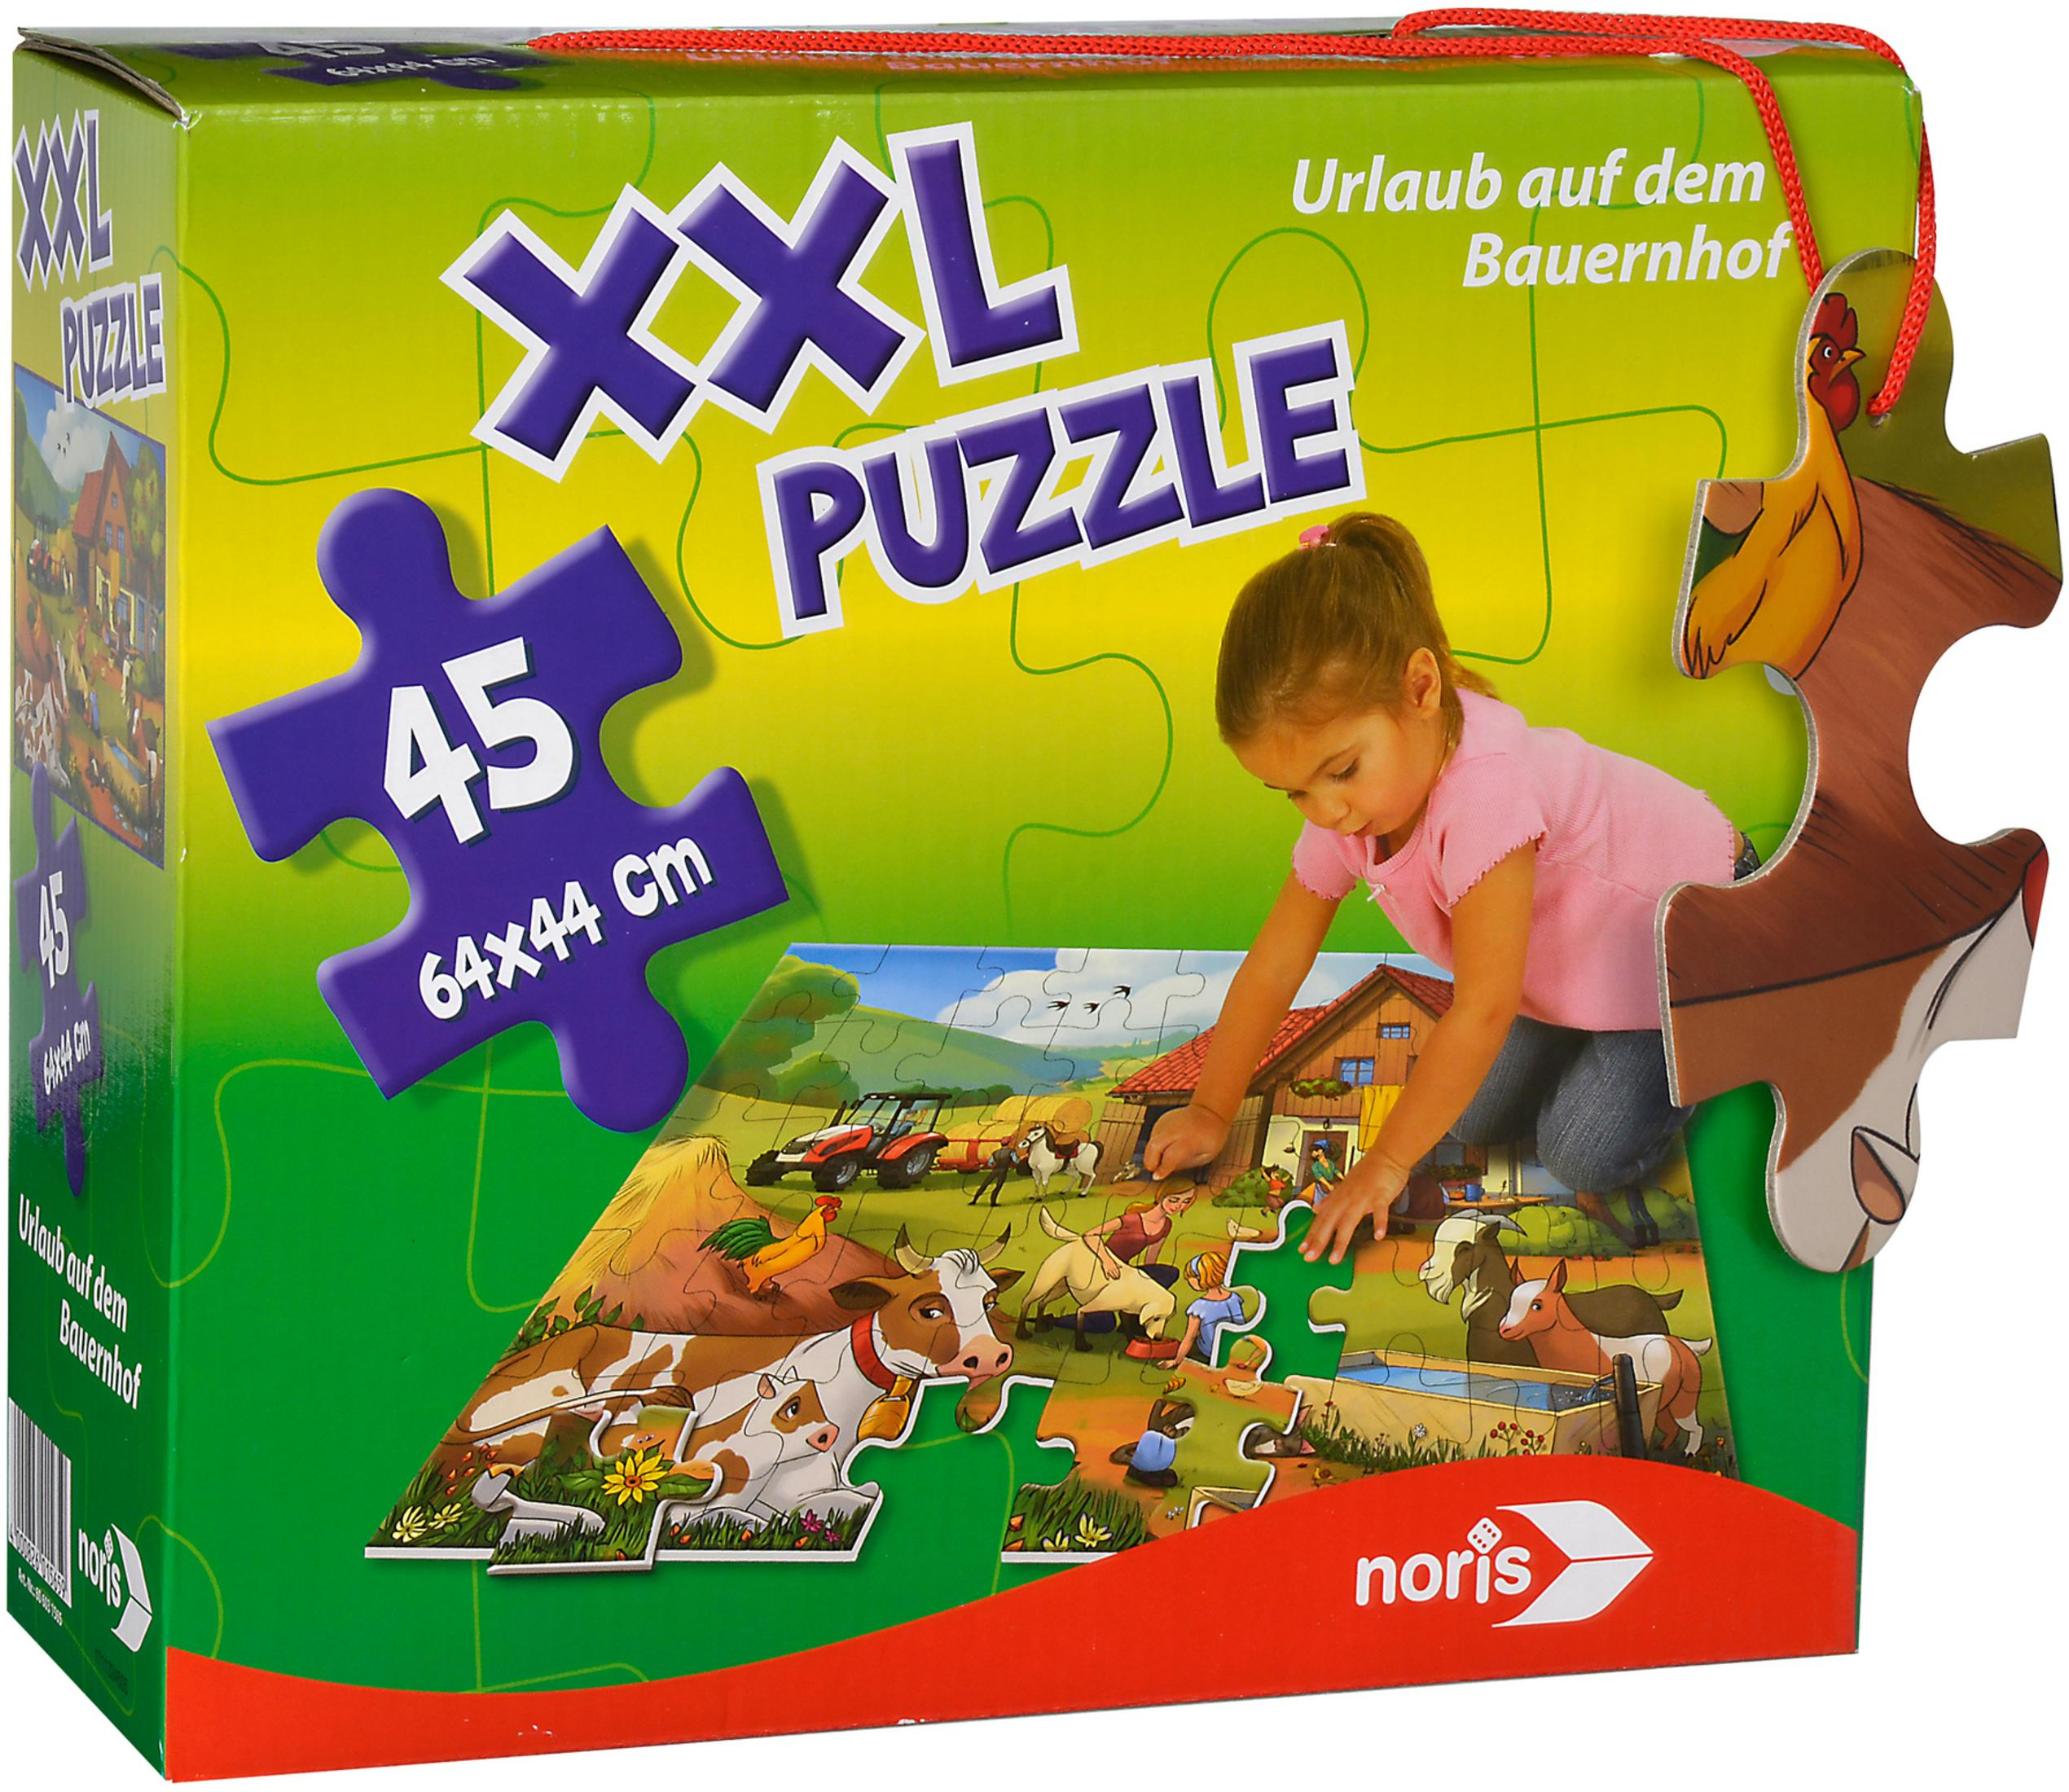 AUF BAUERNHOF XXL Puzzle PUZZLE NORIS DEM 606031565